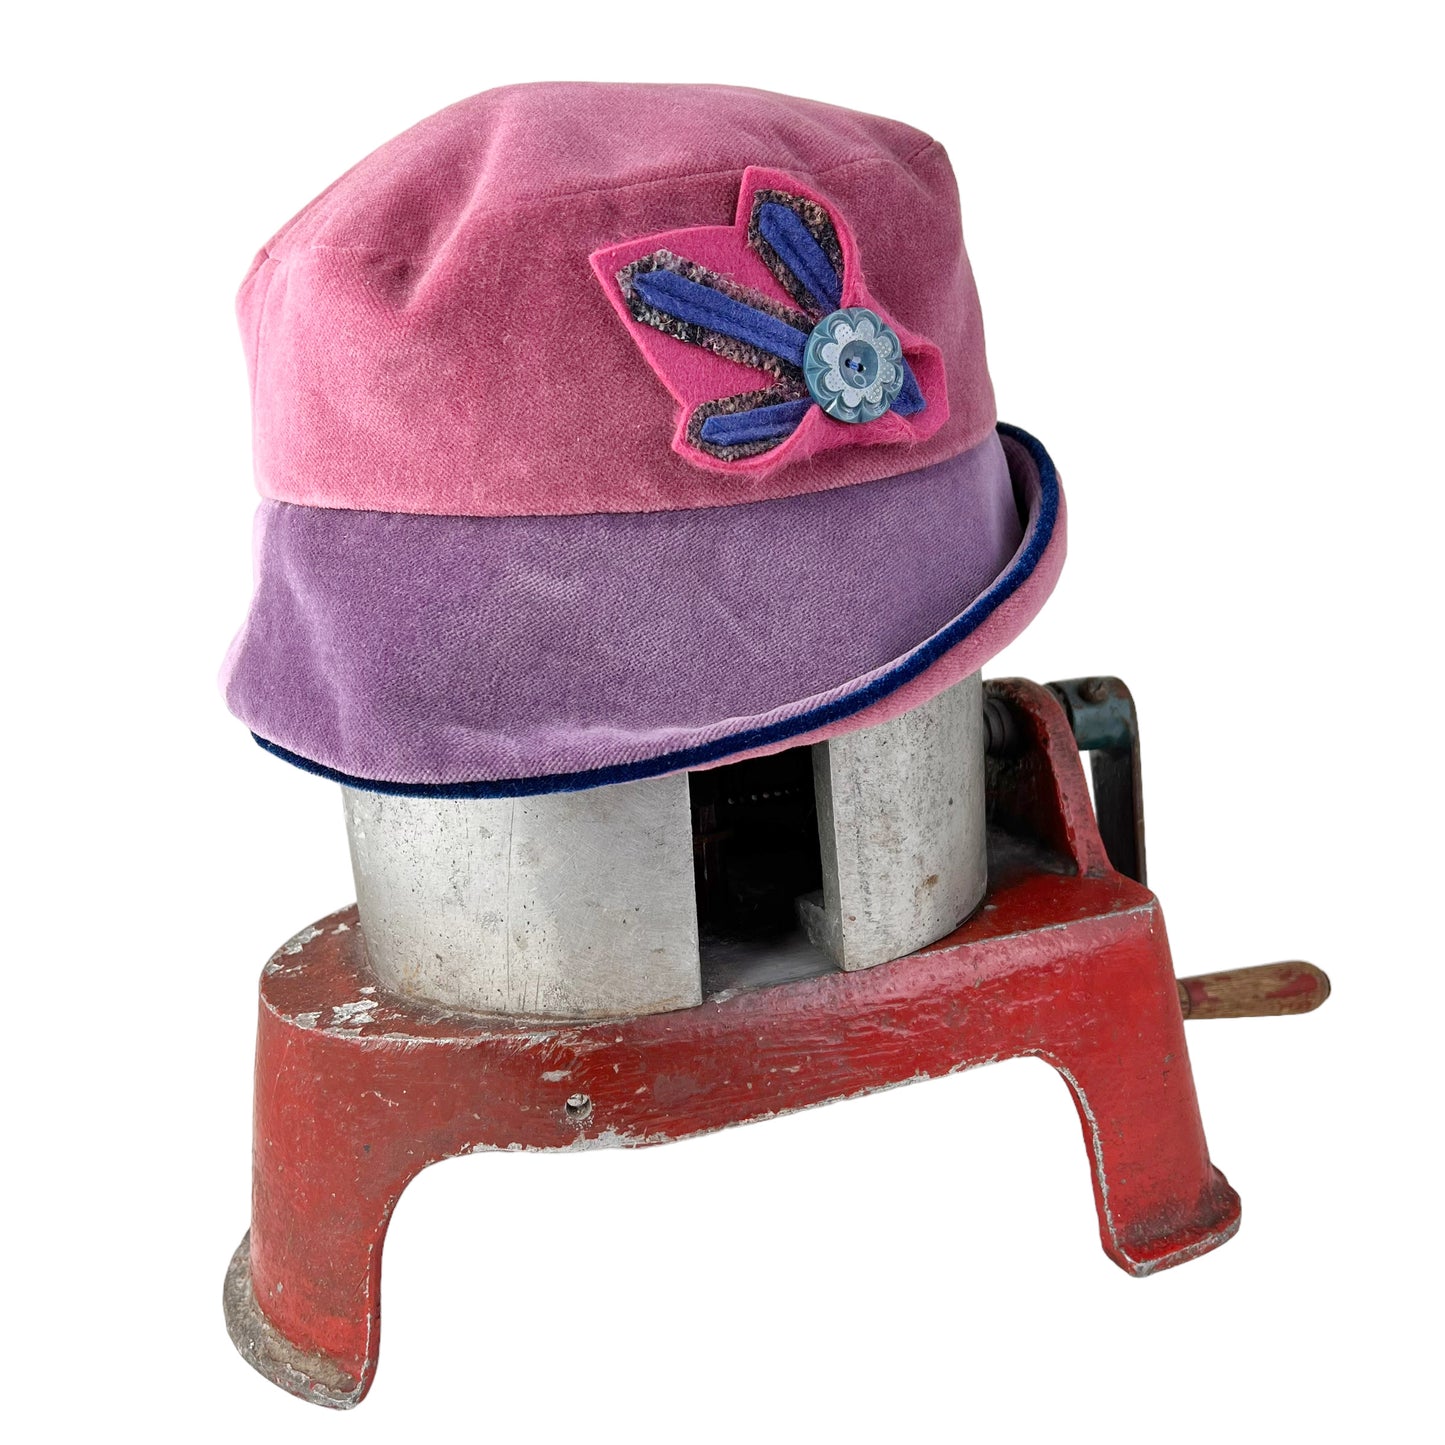 La Bijou Velvet Cloche Hat Size Large Pink